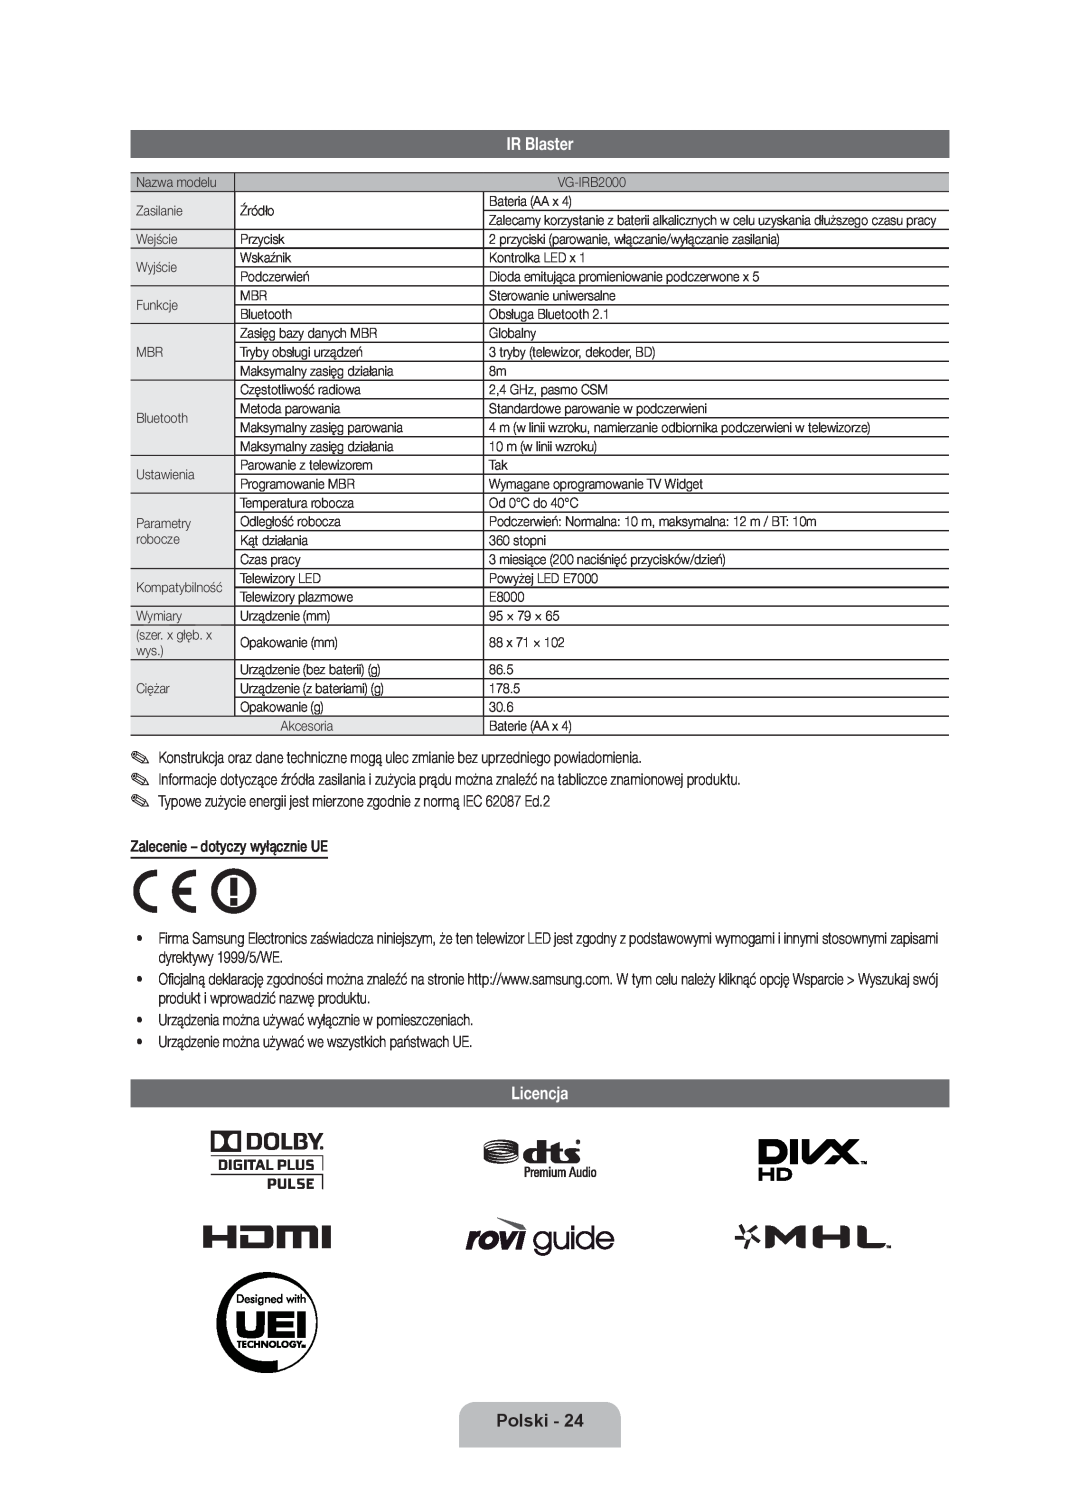 Samsung UE55ES8000SXZF, UE46ES8000SXXN, UE55ES8000SXXH manual Licencja, IR Blaster, Polski, Zalecenie - dotyczy wyłącznie UE 